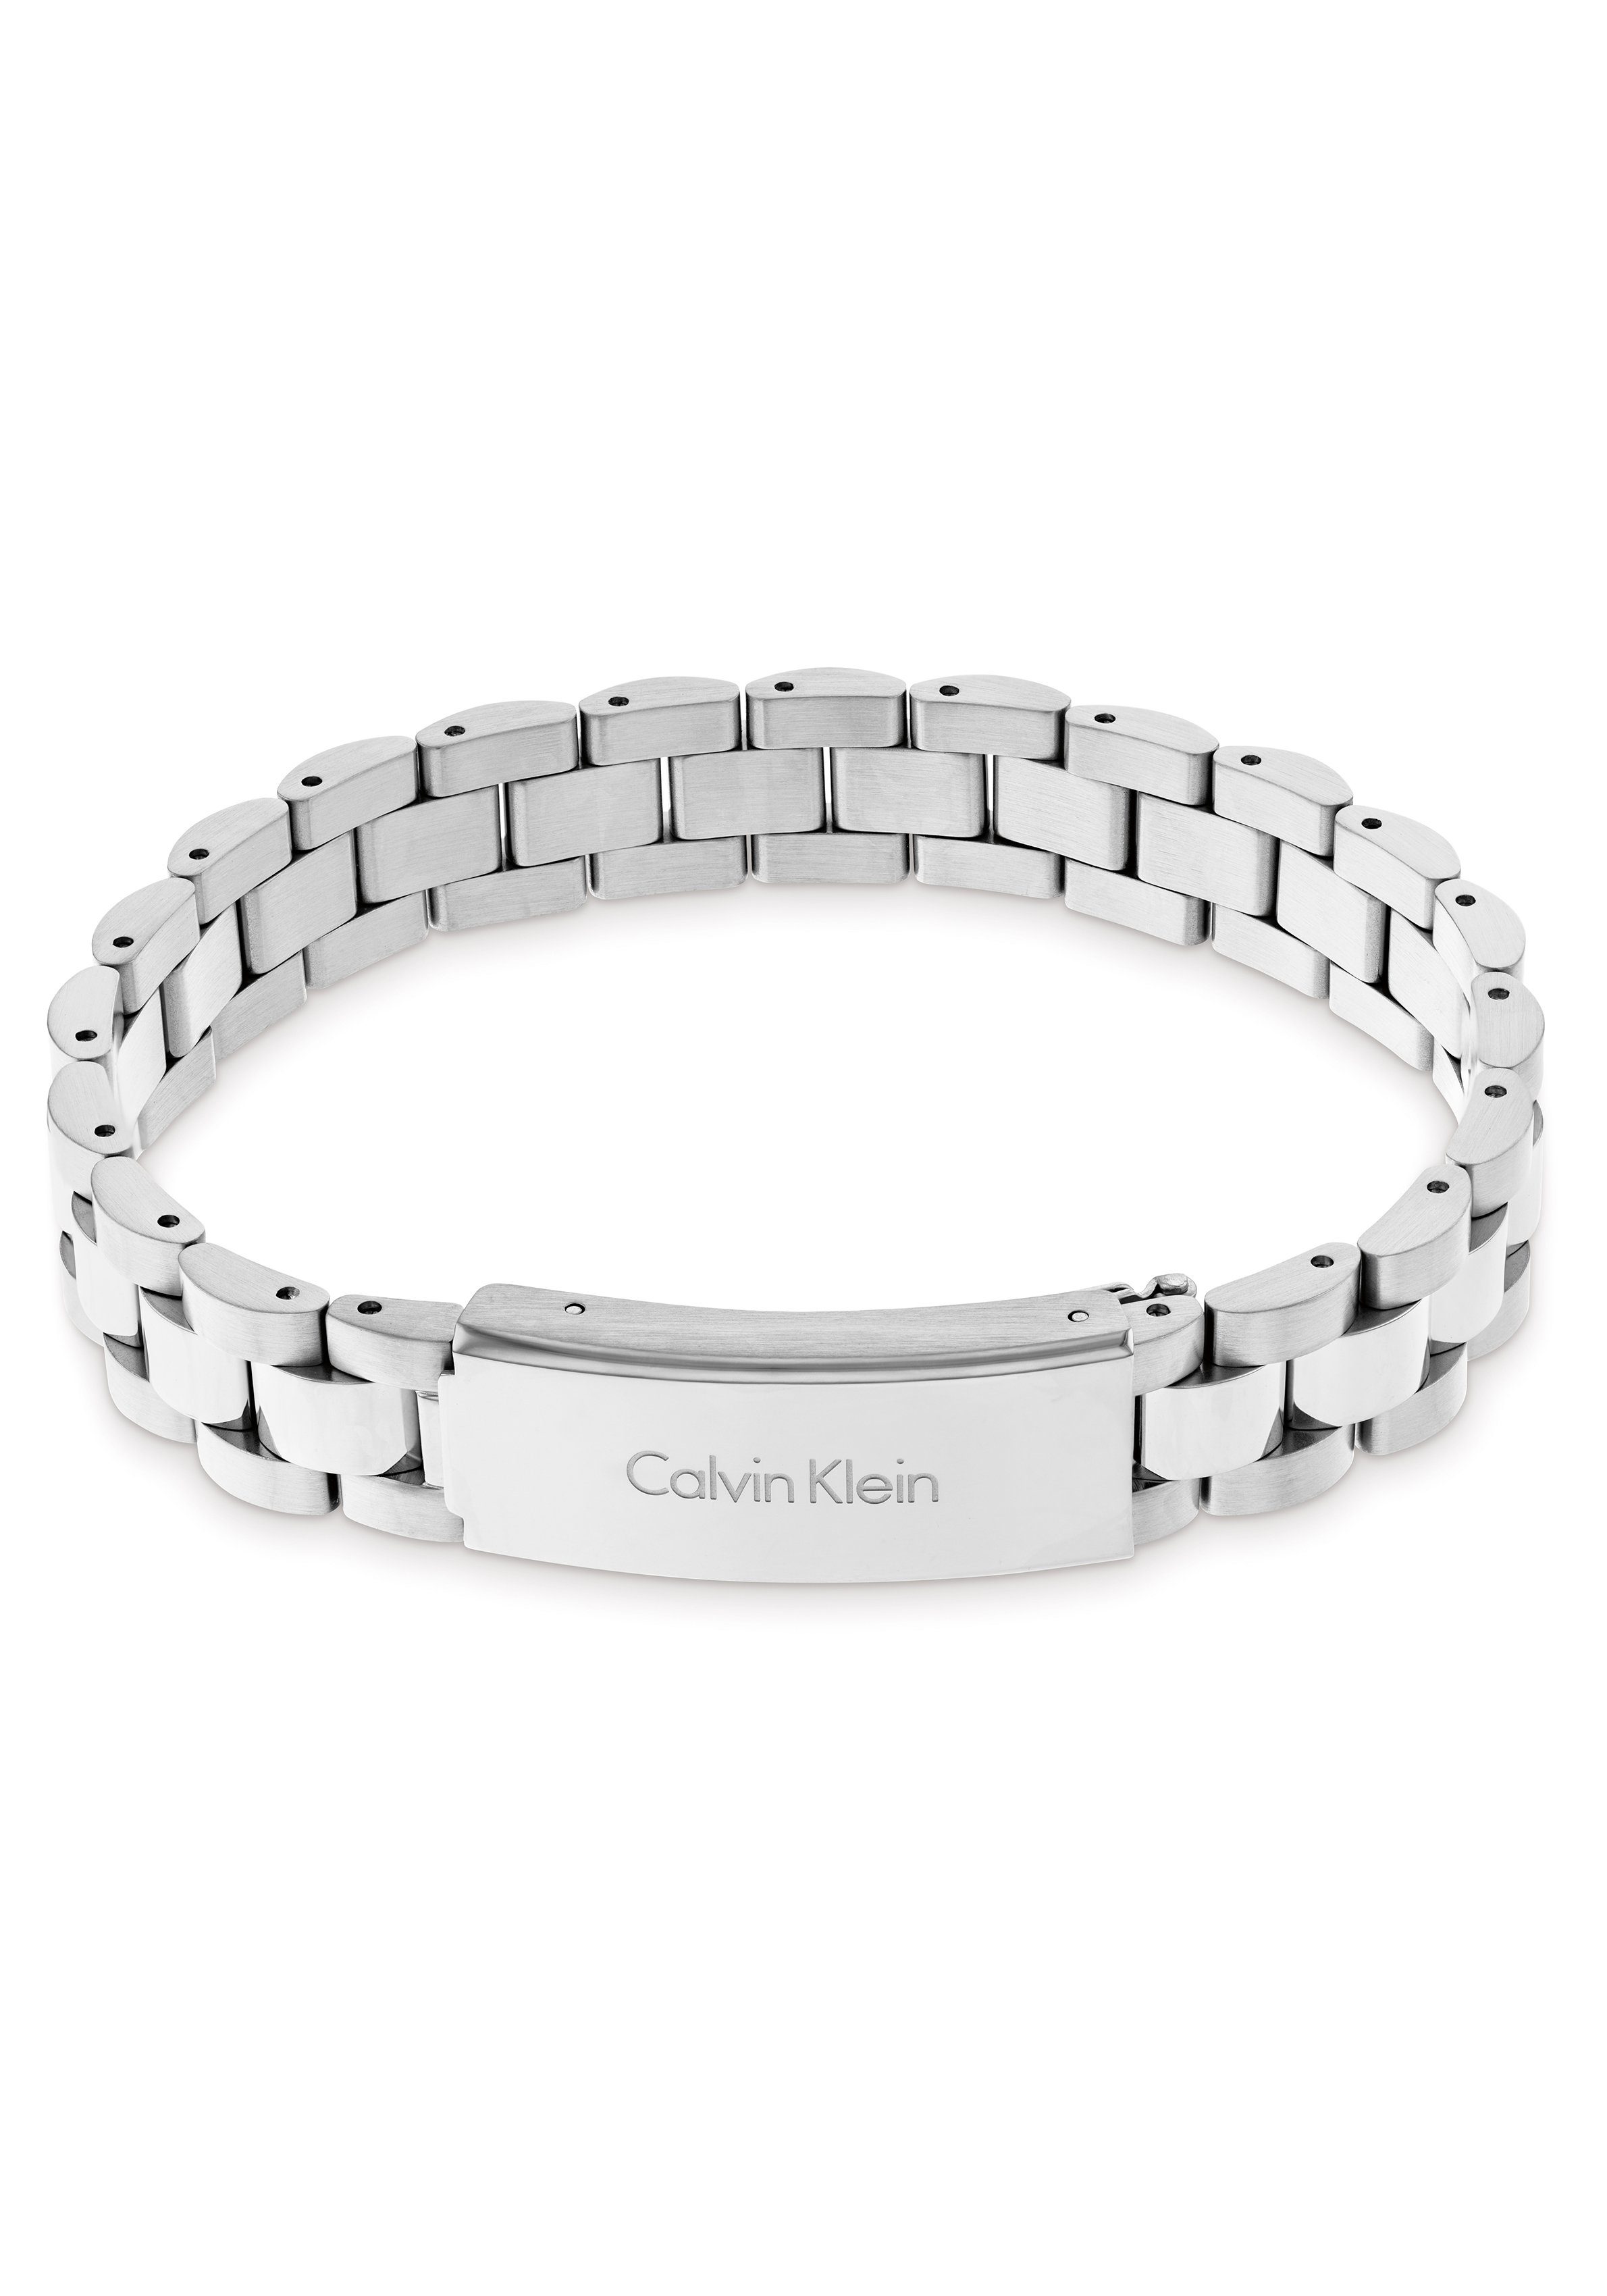 Calvin Klein Armband Link, 35000090, 35000092